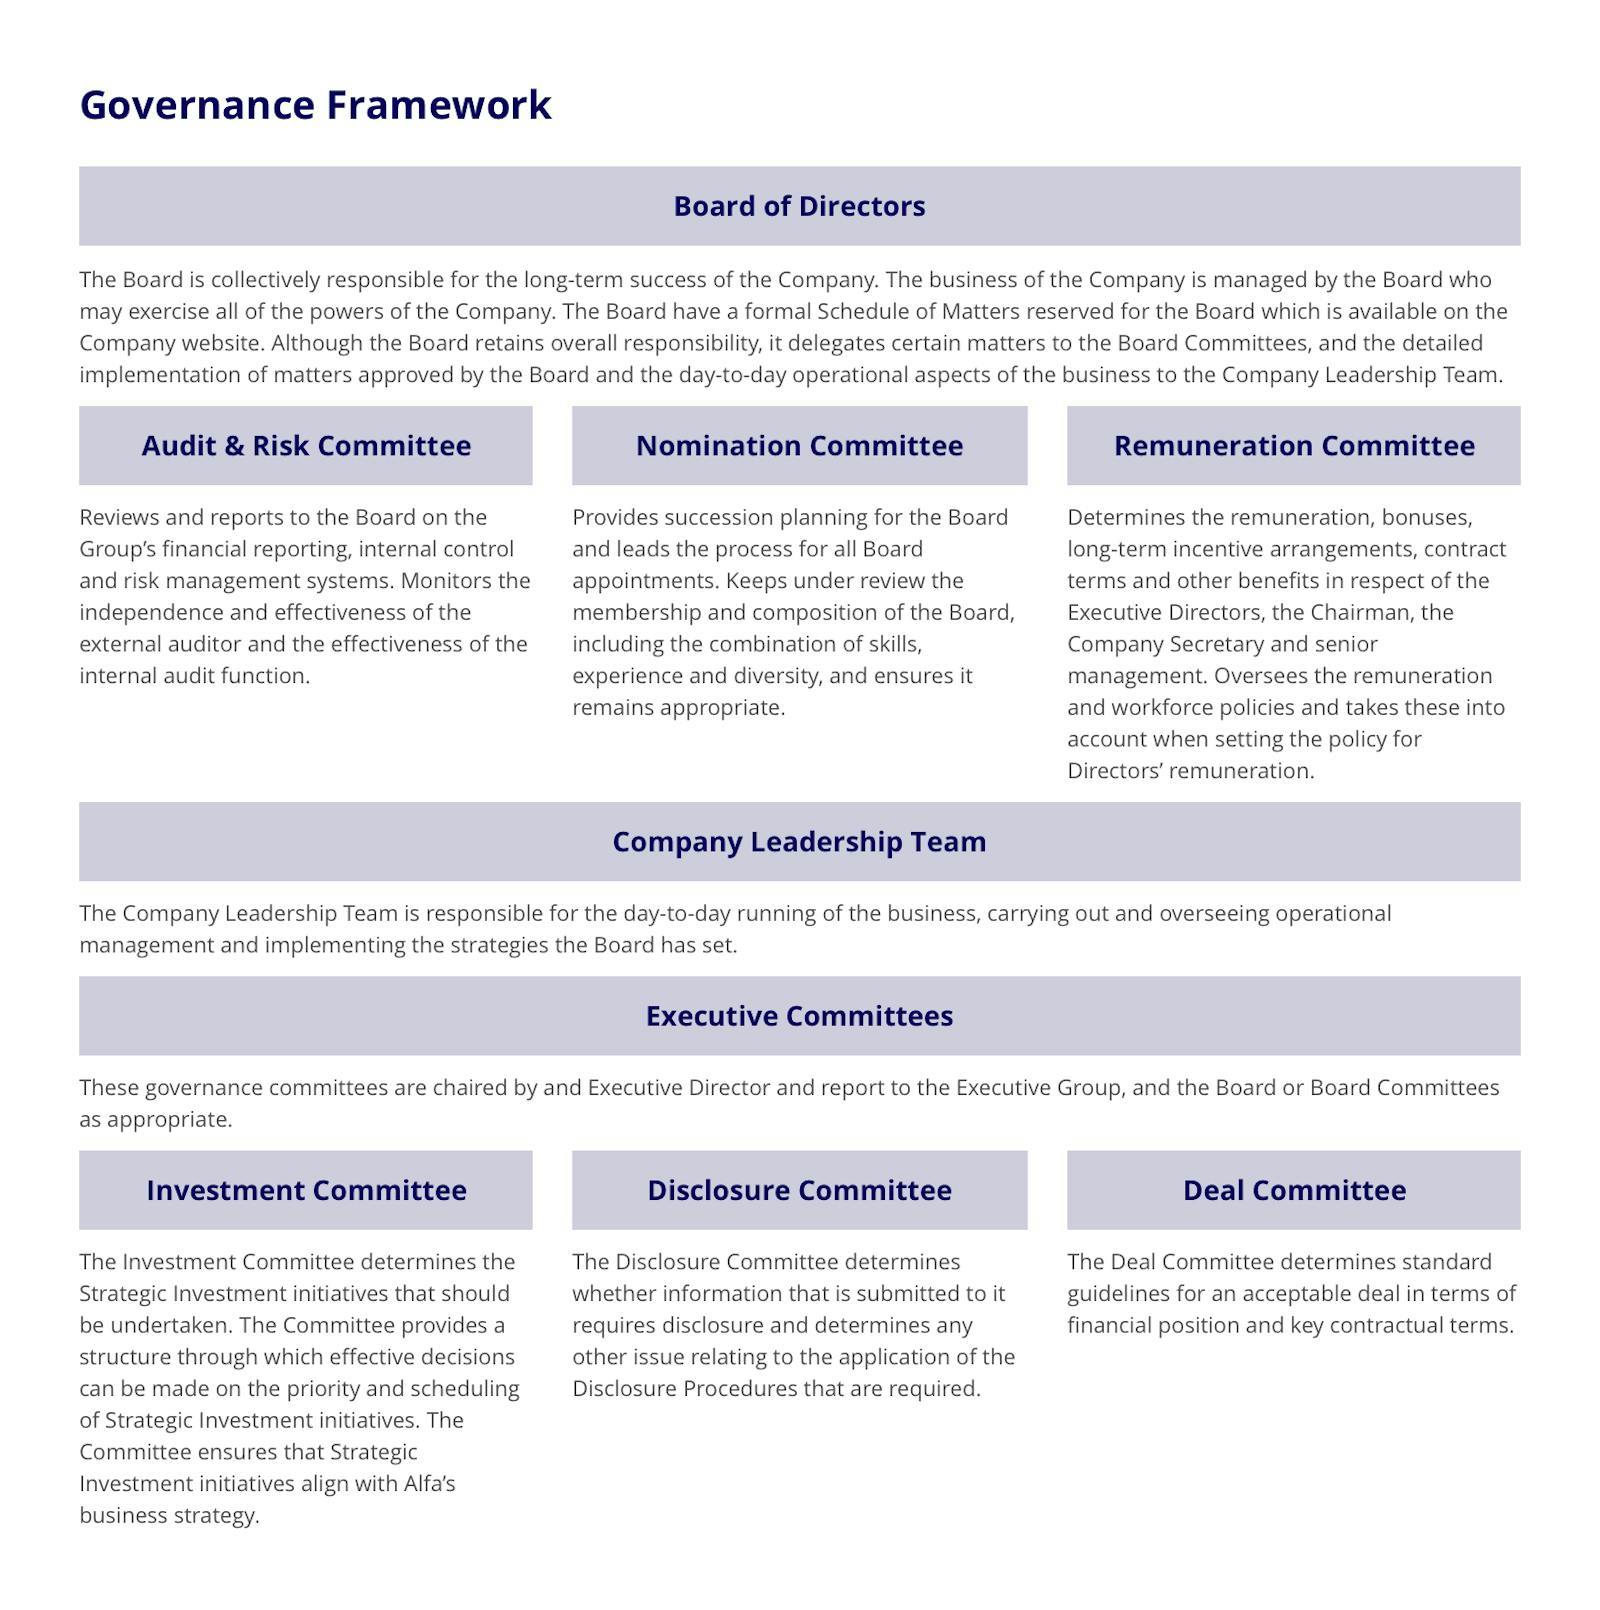 Governance framework table